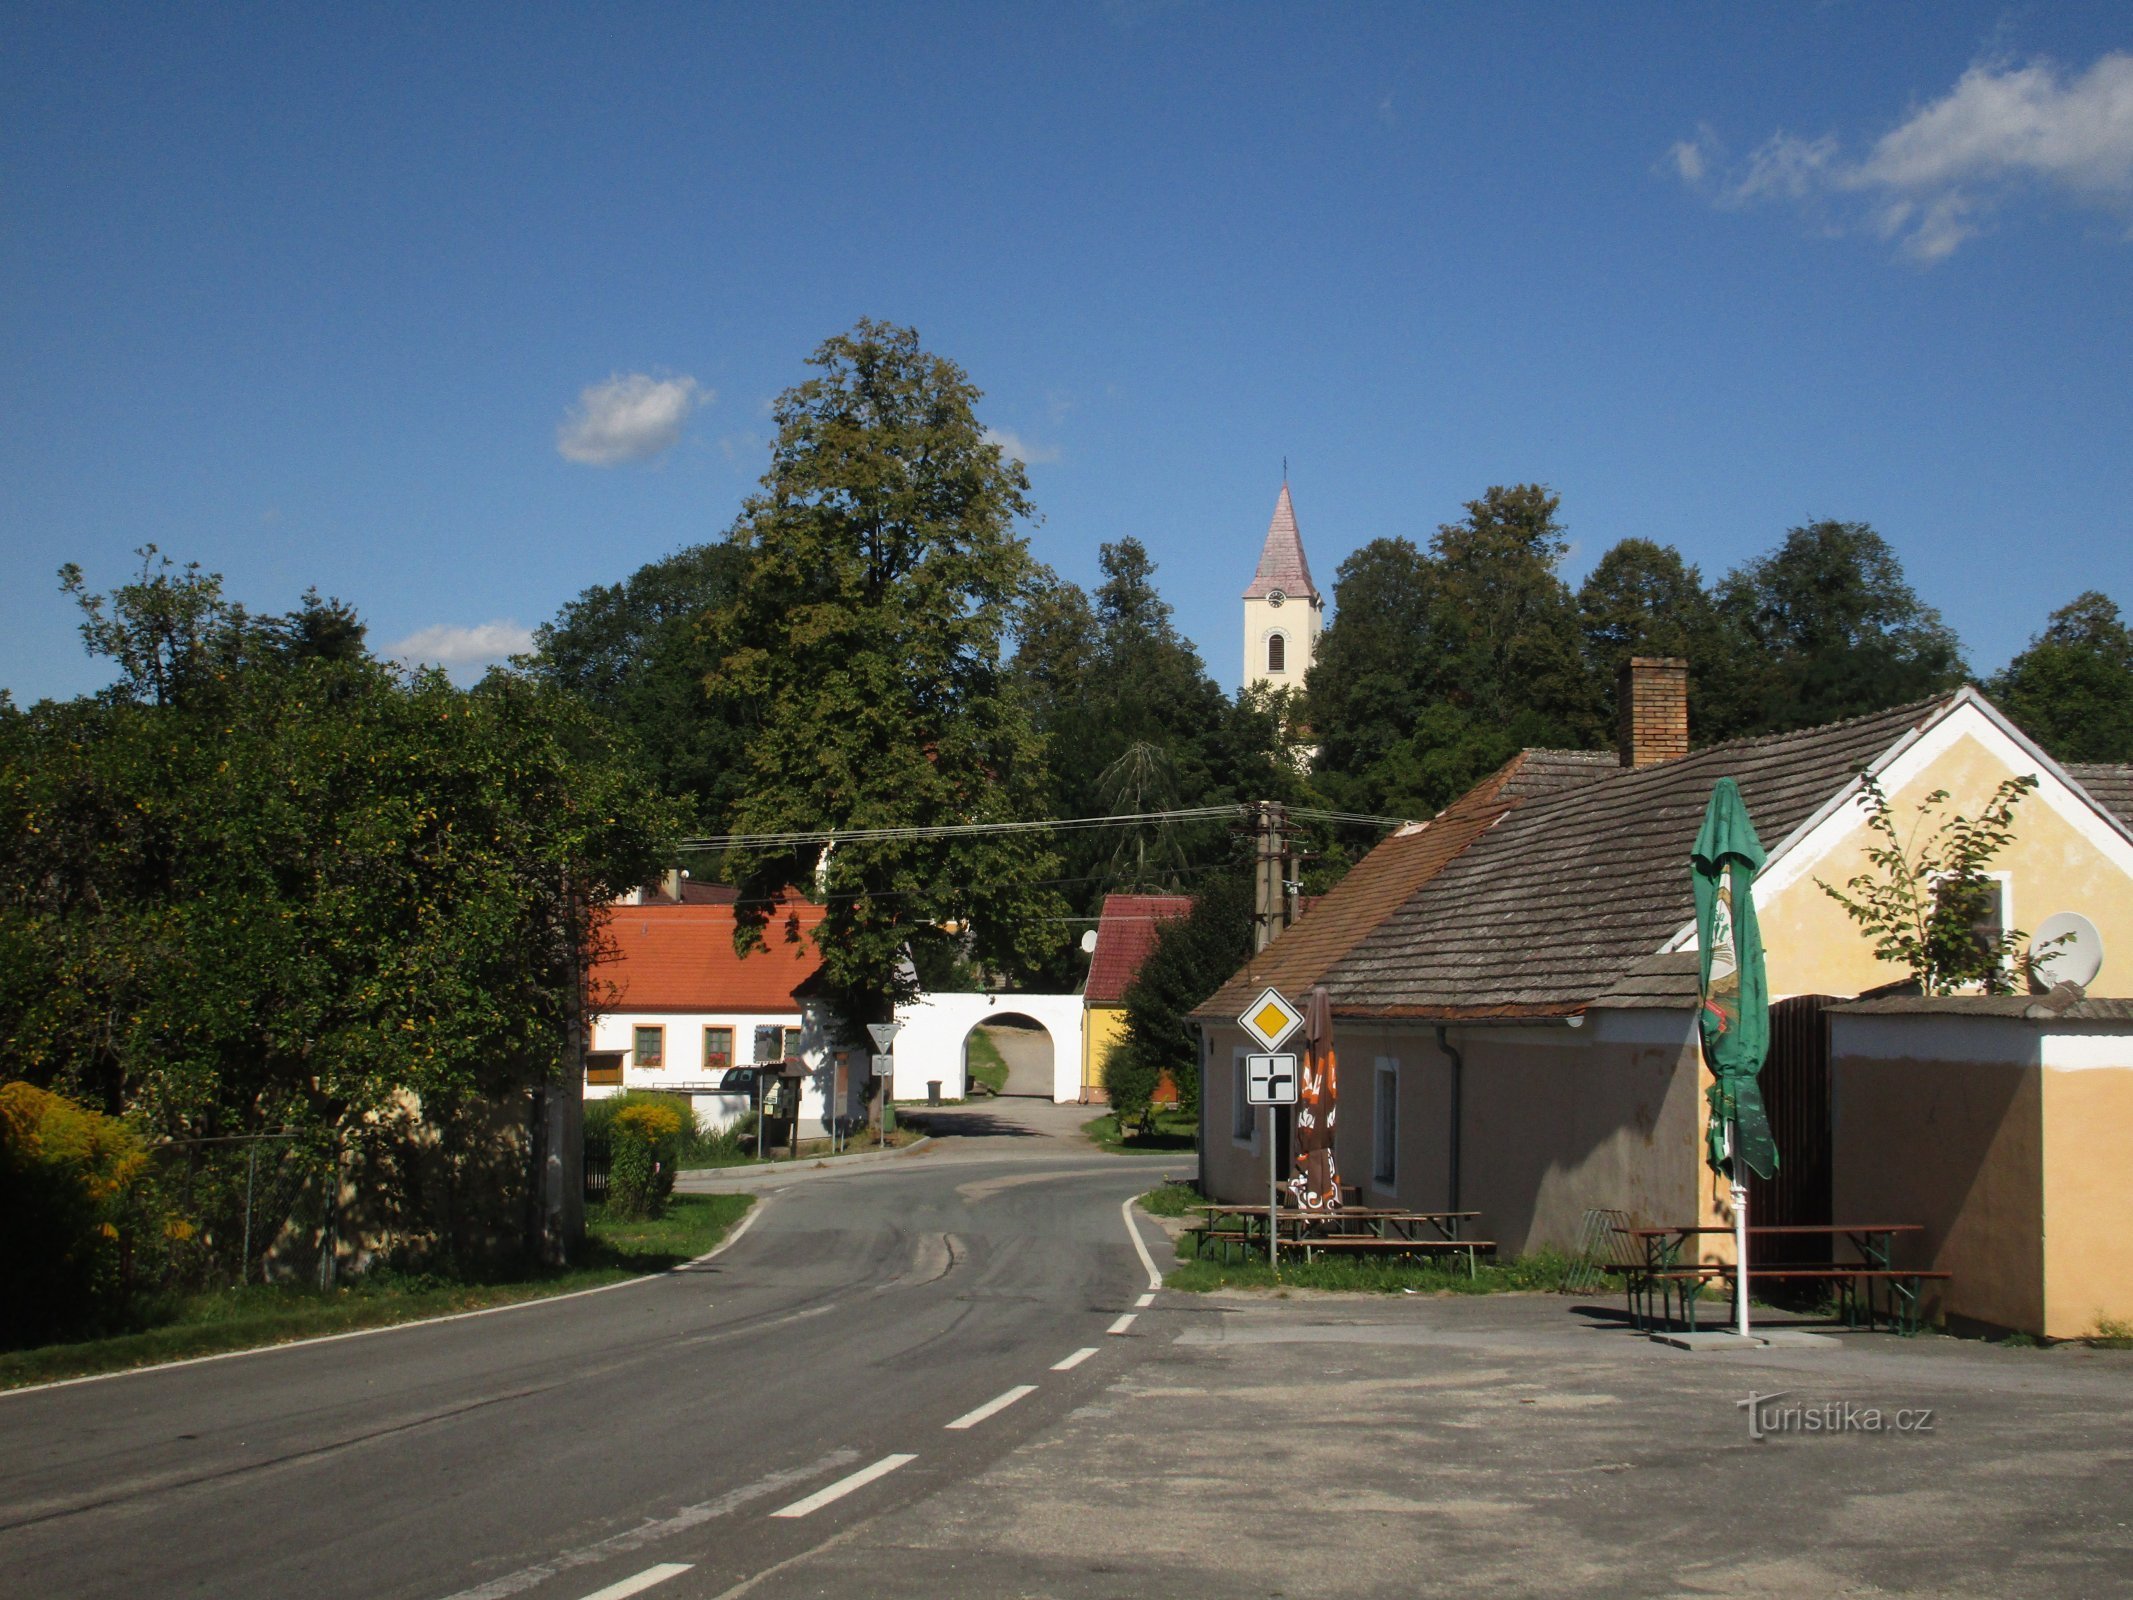 Blick auf das Dorf von der Straße 153 aus Chlum u Třeboň kommend